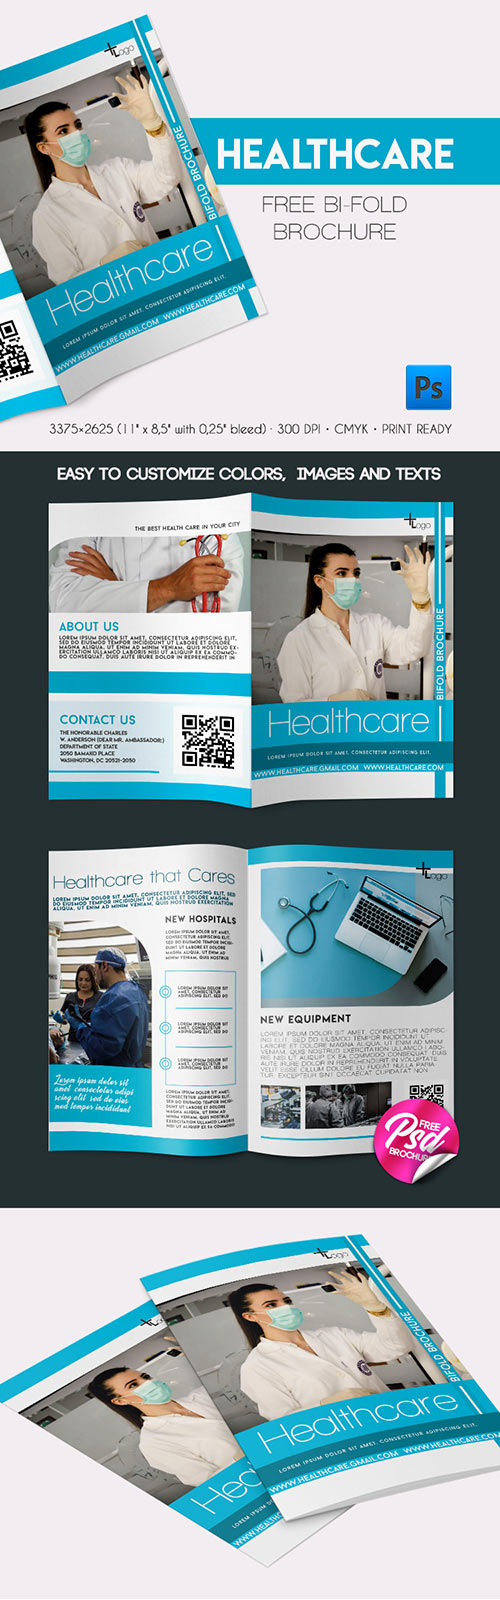 Healthcare Bi-Fold Brochure in PSD